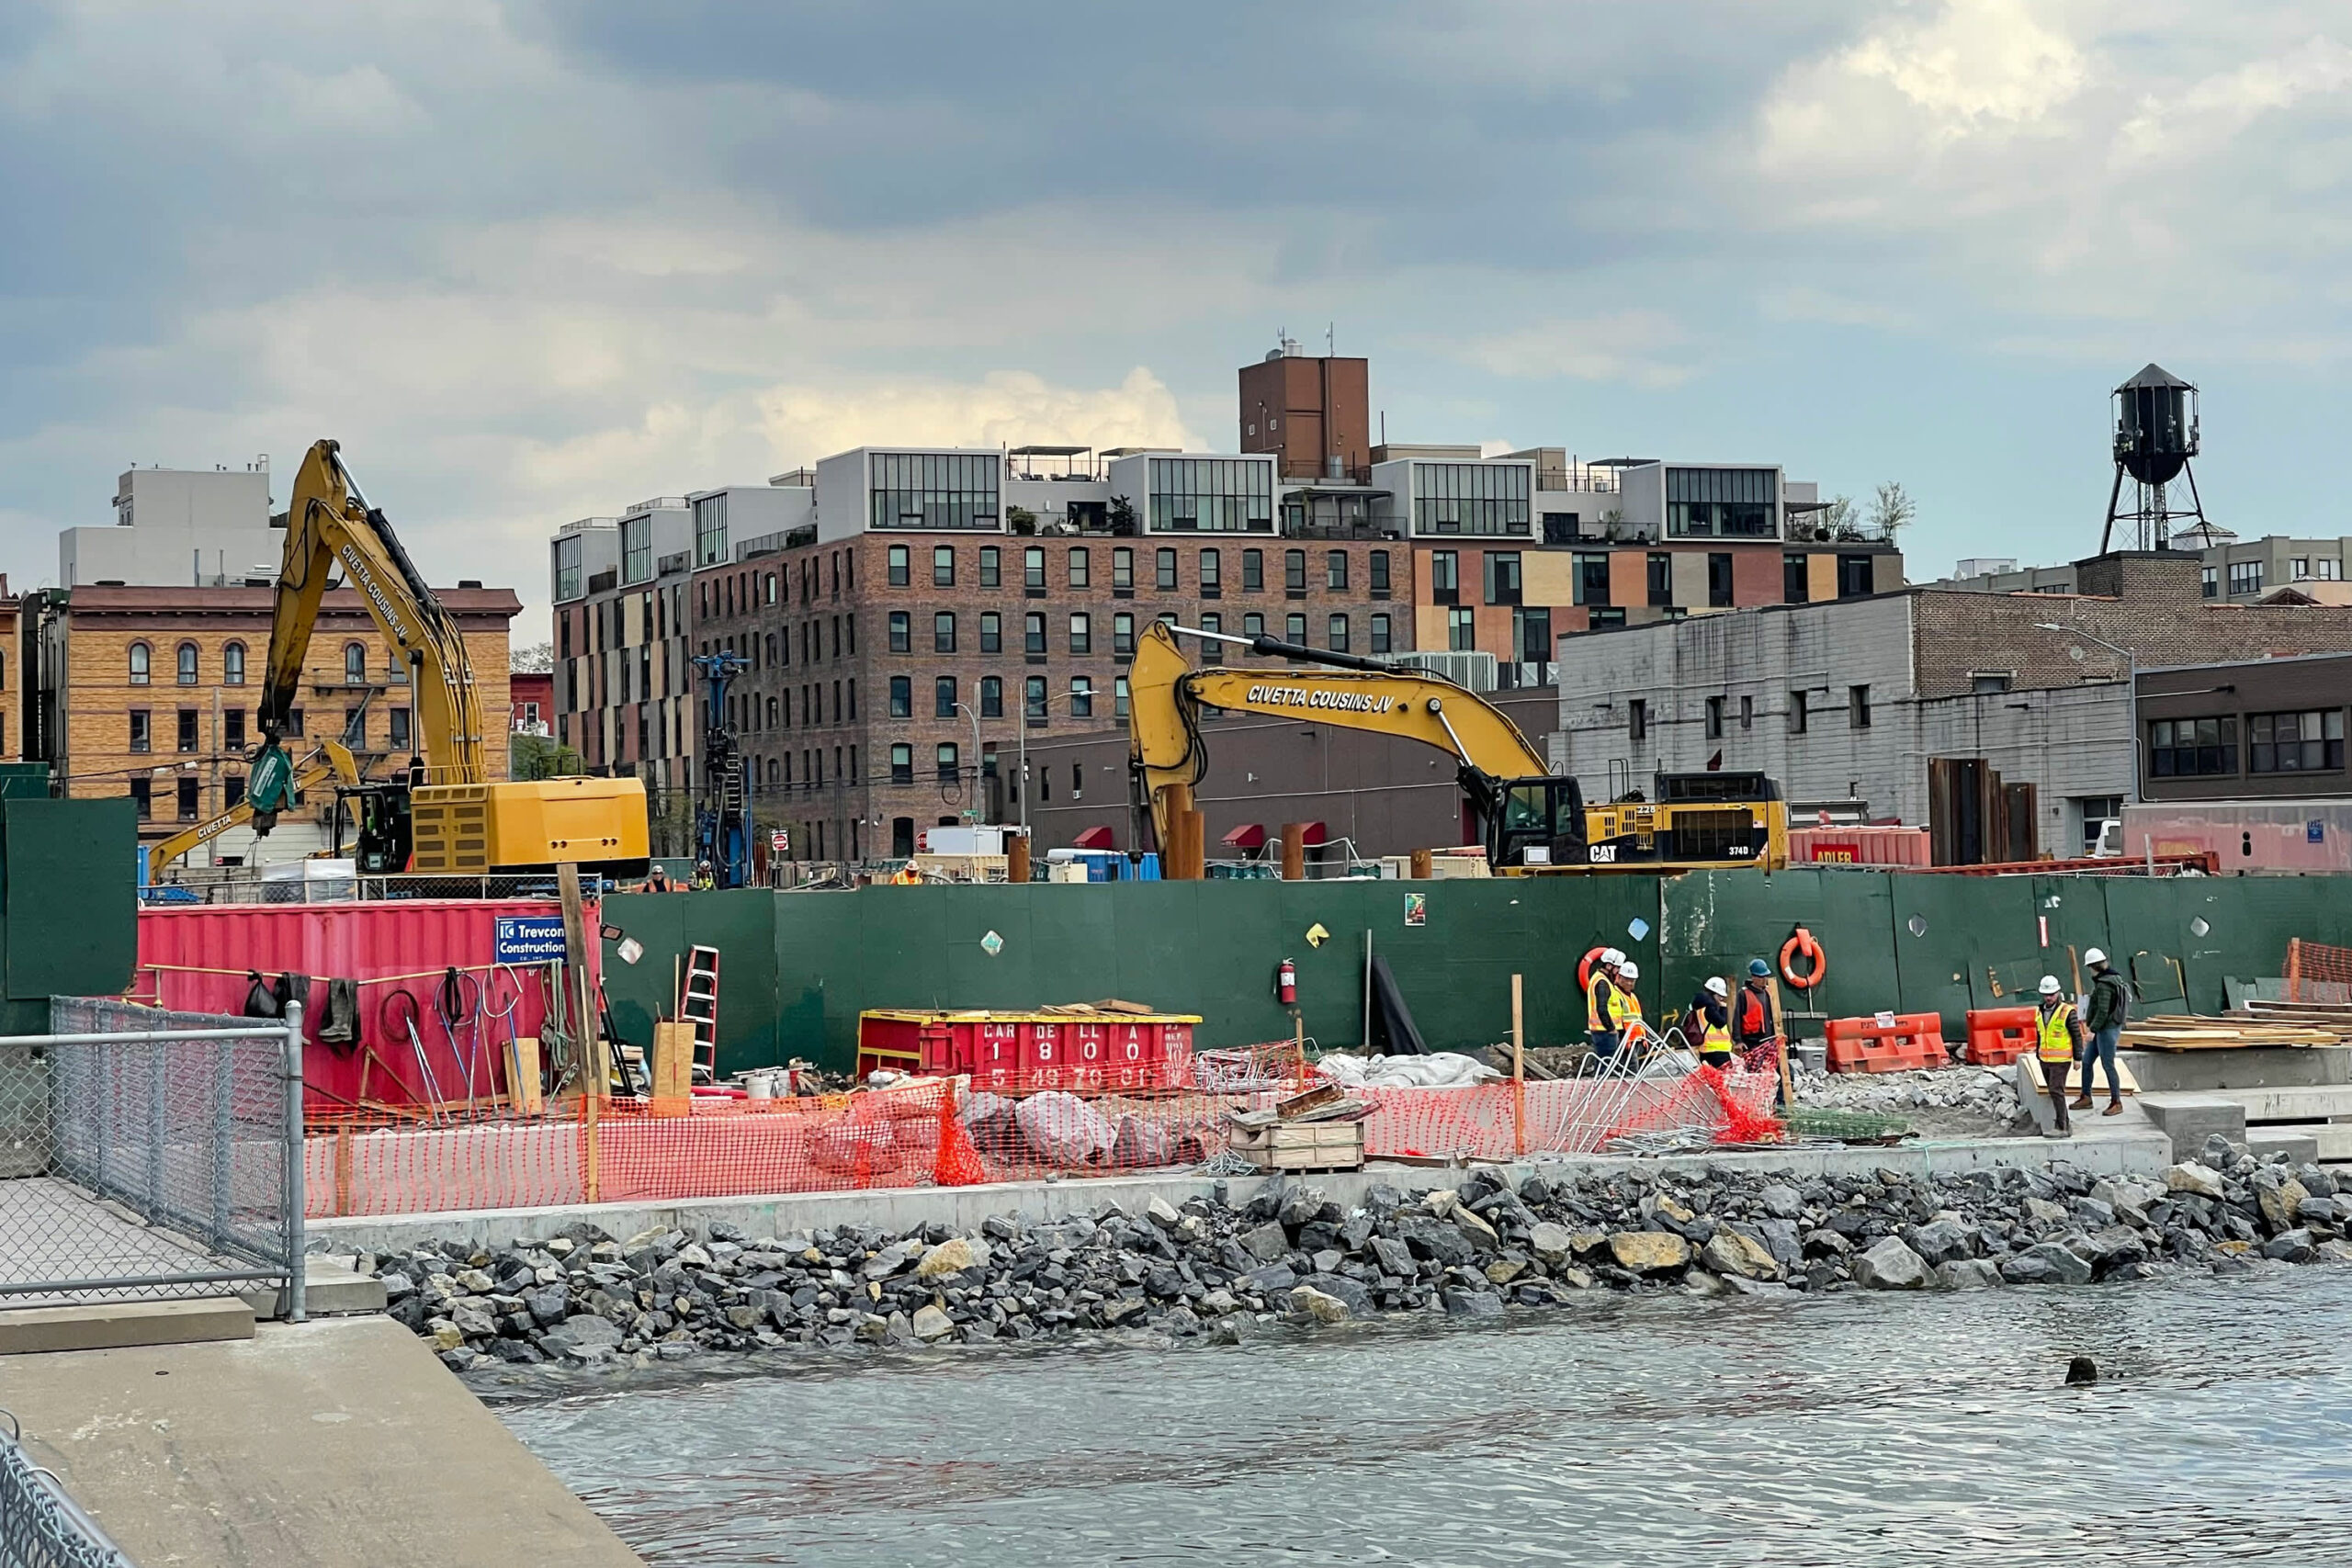 Massiivinen geoterminen asuntokompleksi on nousemassa Brooklyniin, ensimmäinen laatuaan